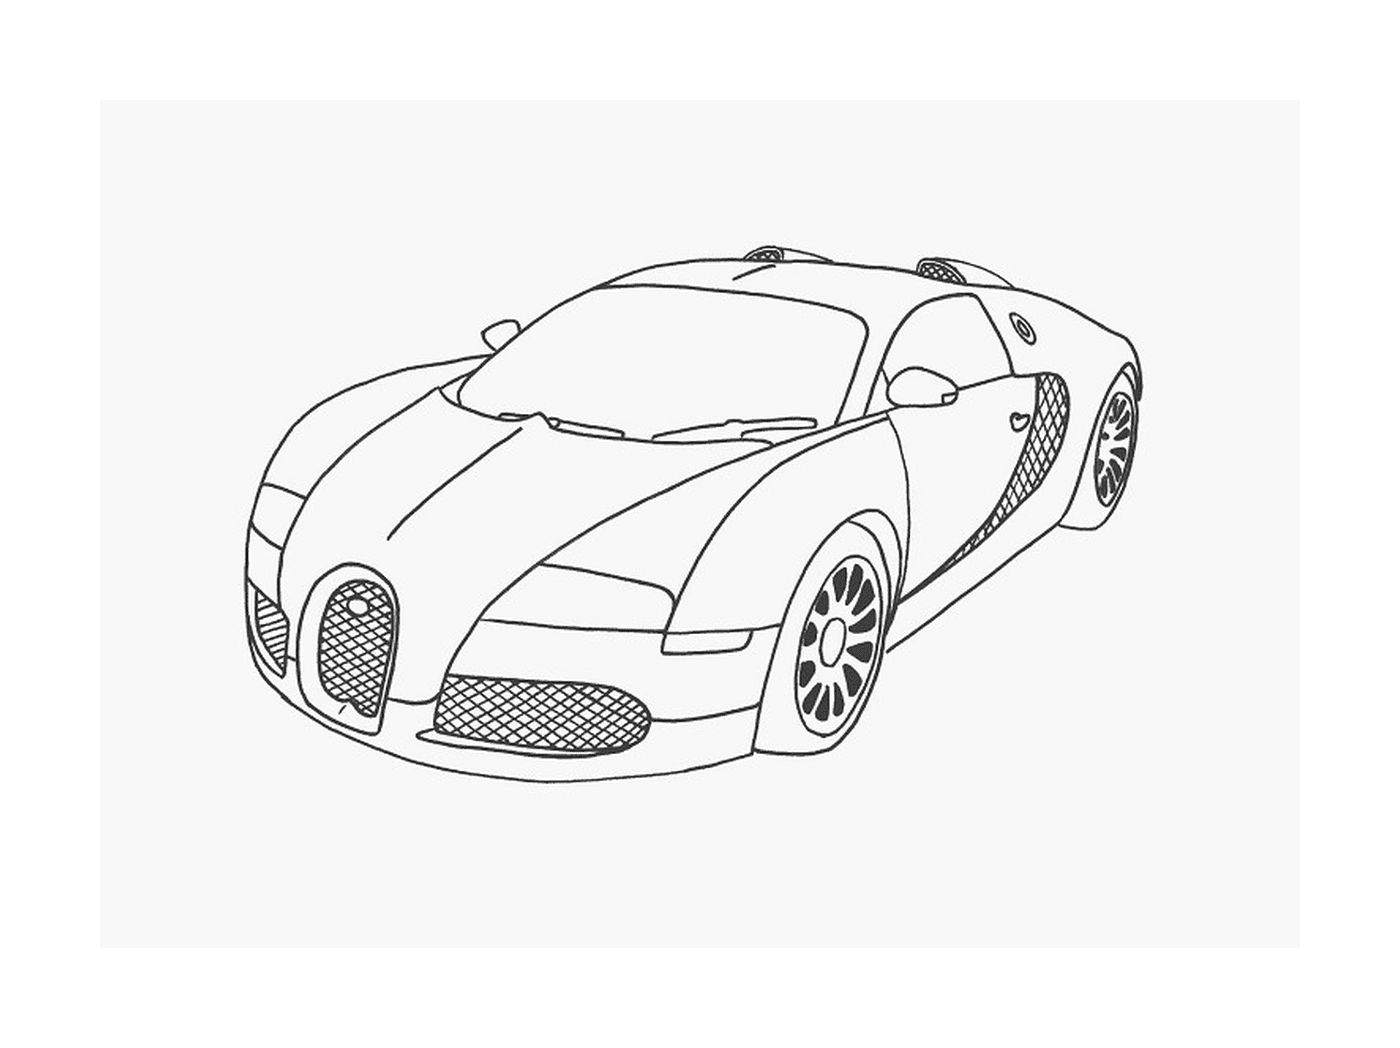  Bugatti coche de lujo 